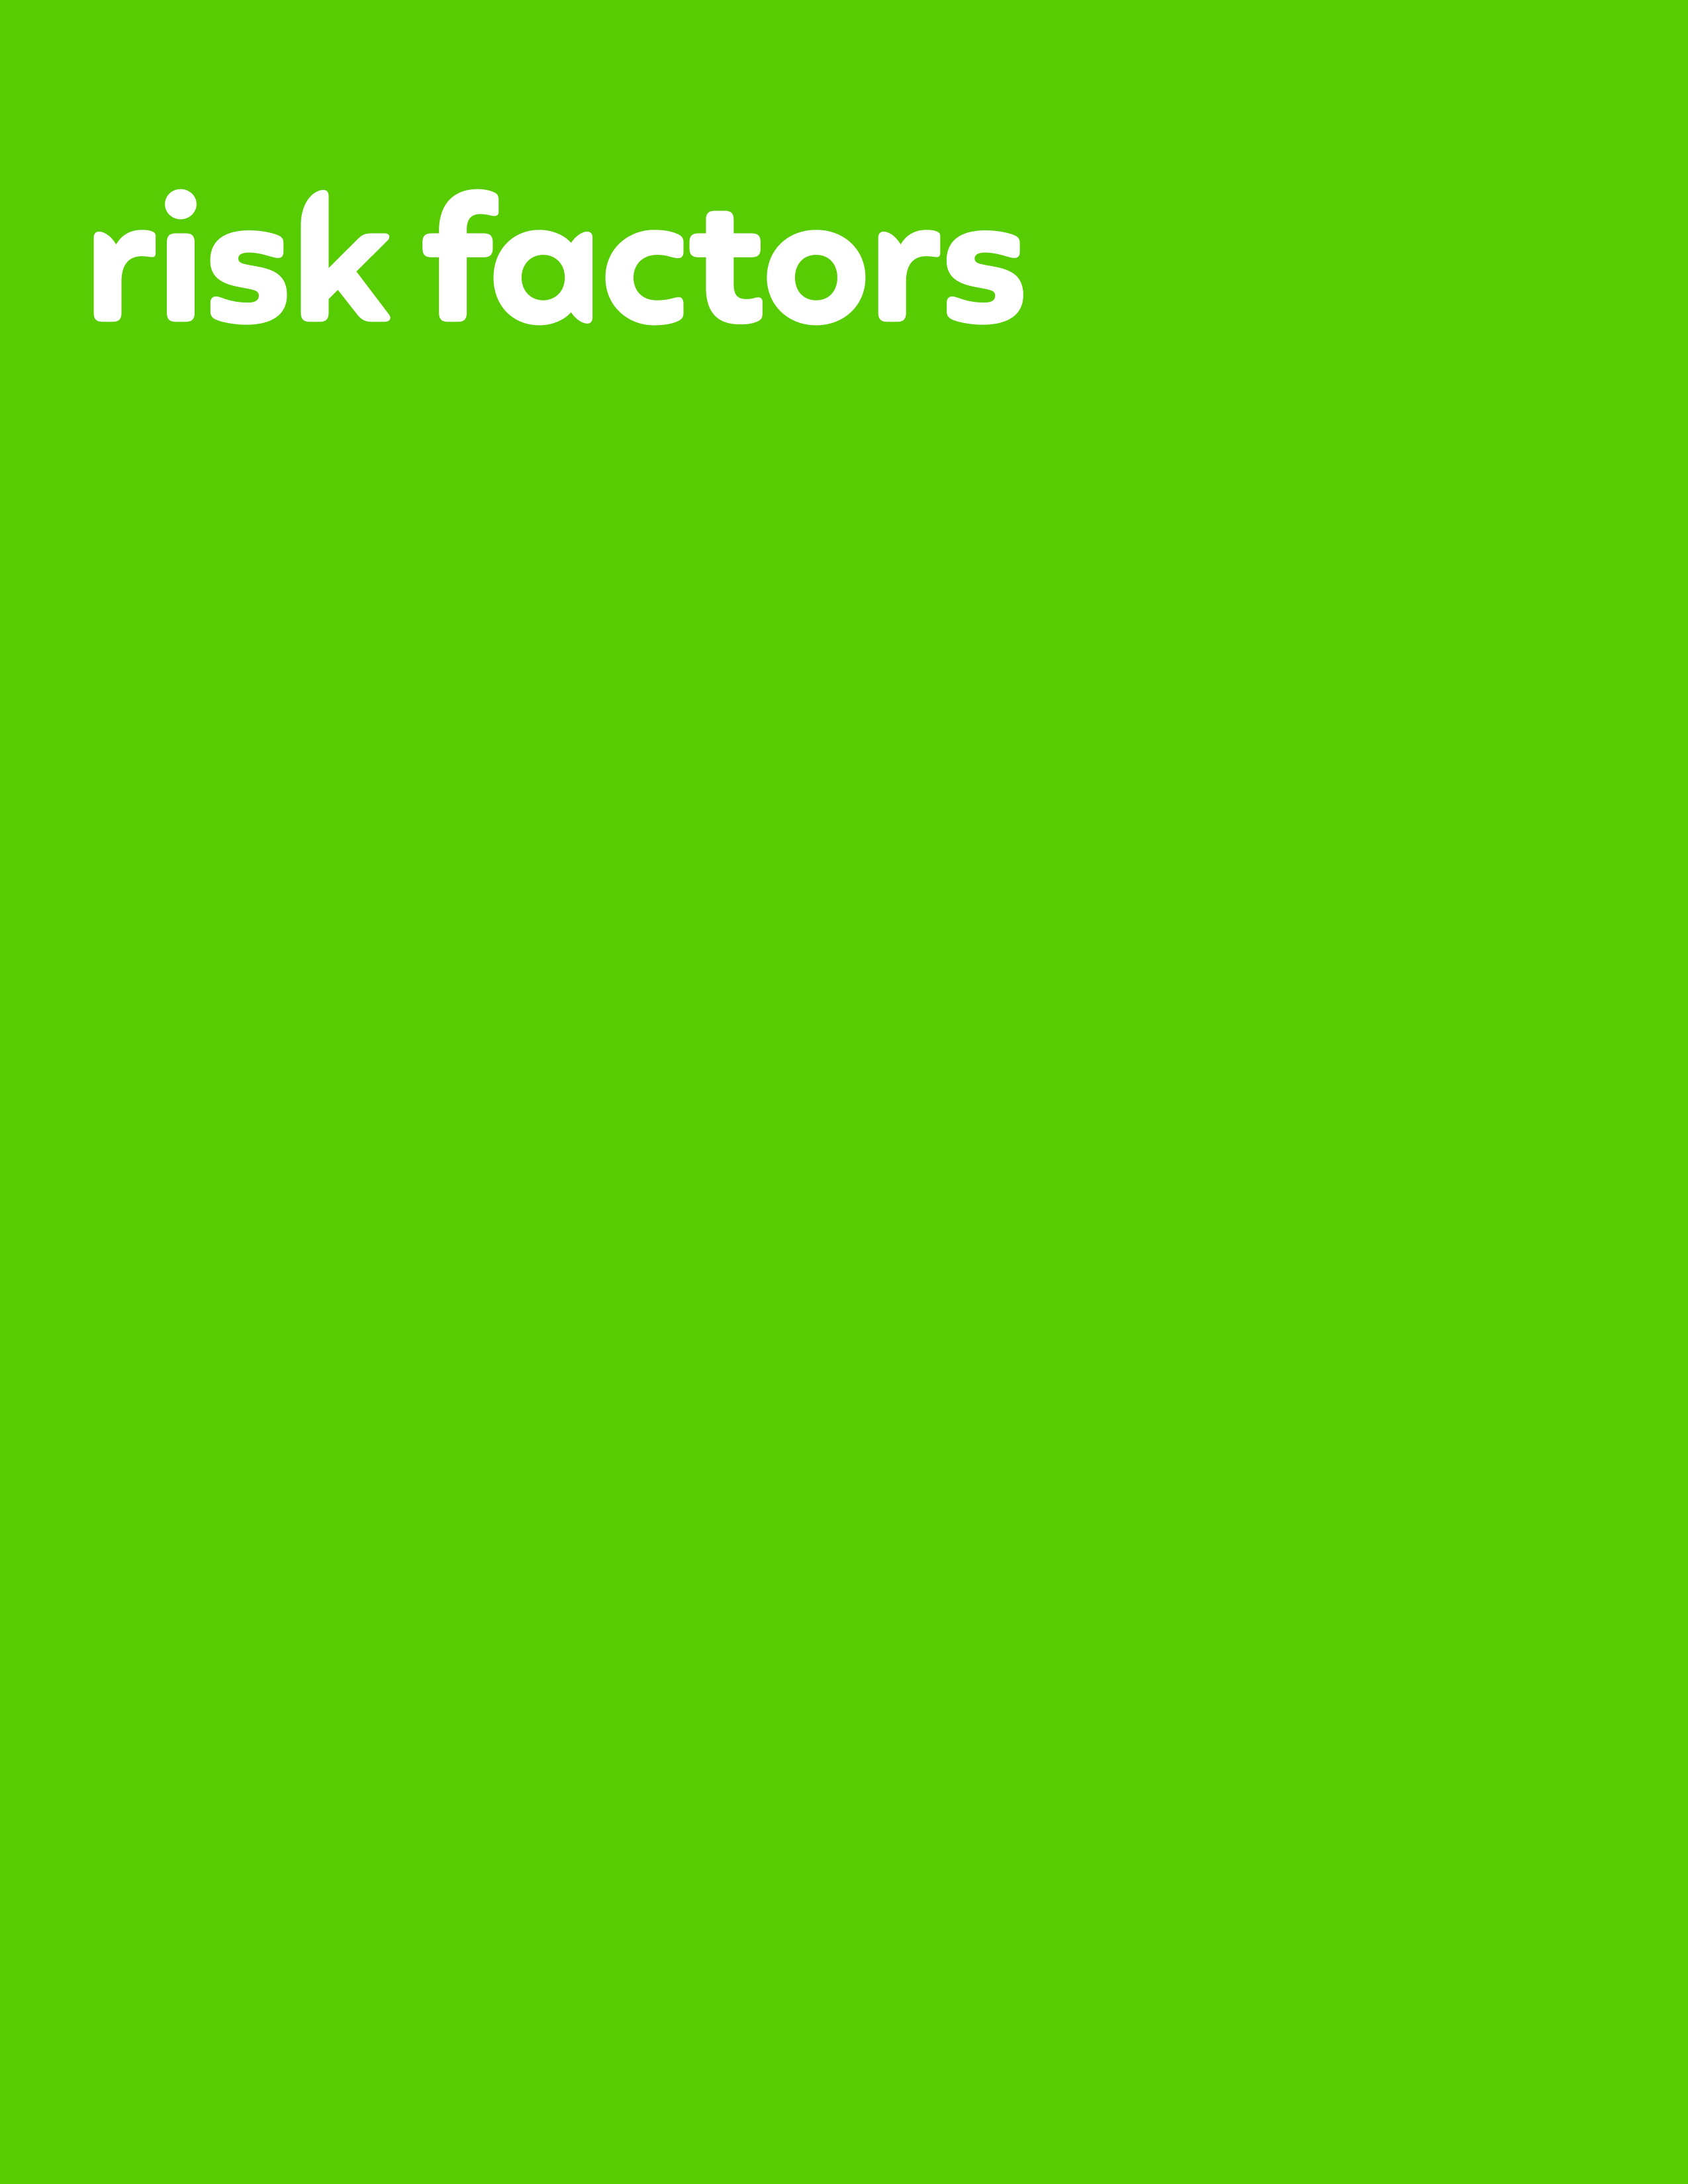 riskfactors_2b.jpg